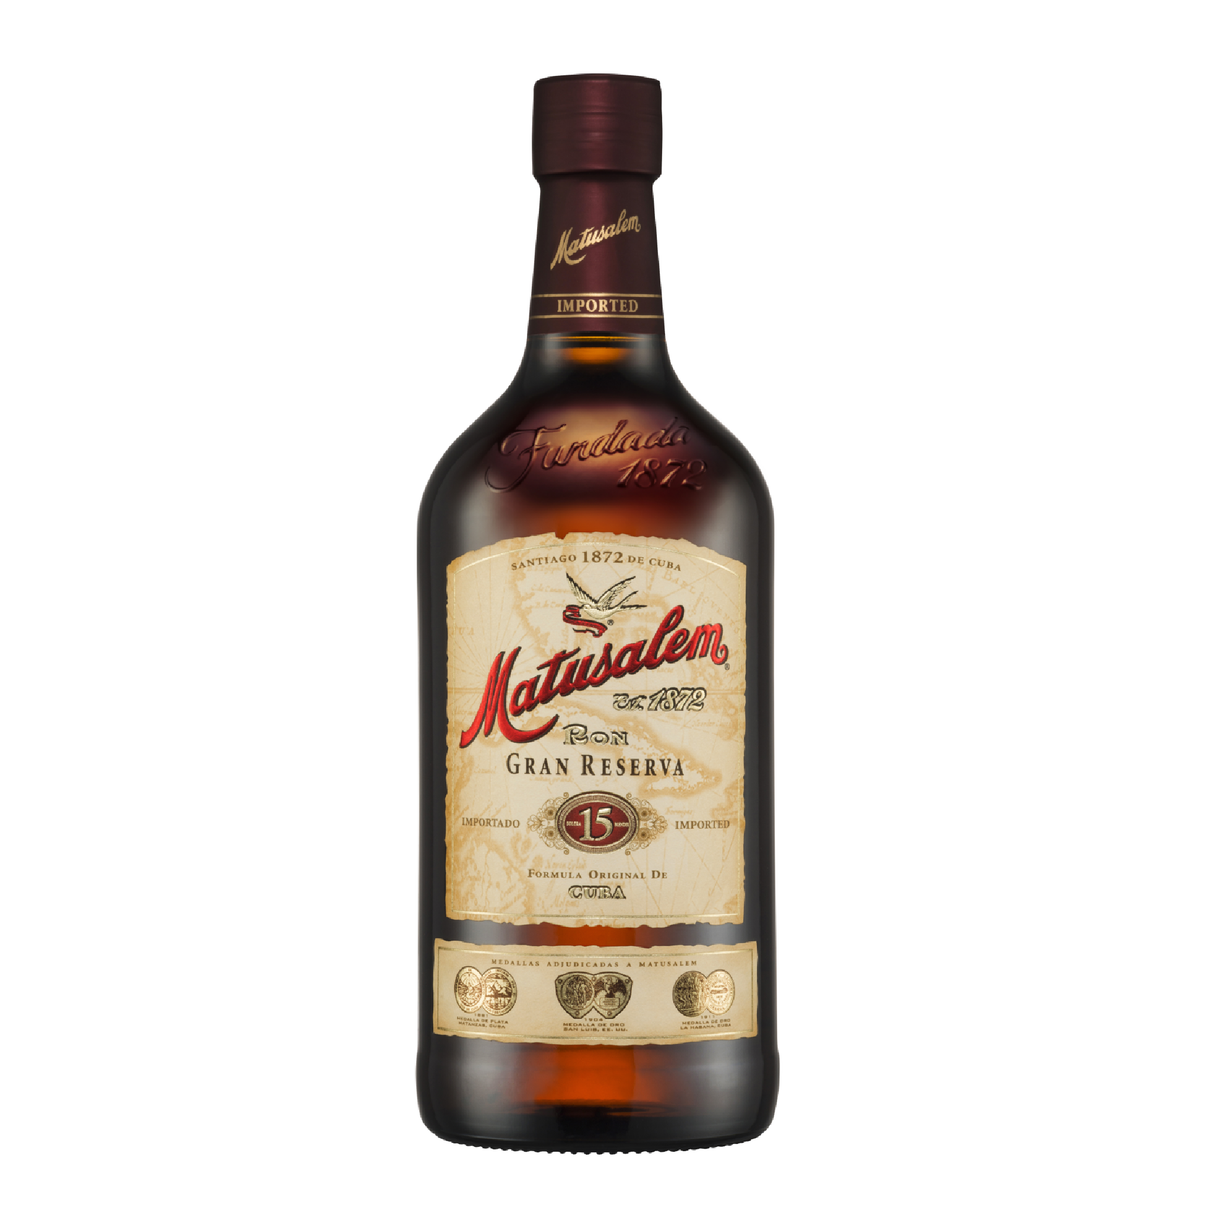 Matusalem Gran Reserva 15 Year Old Rum - Liquor Geeks